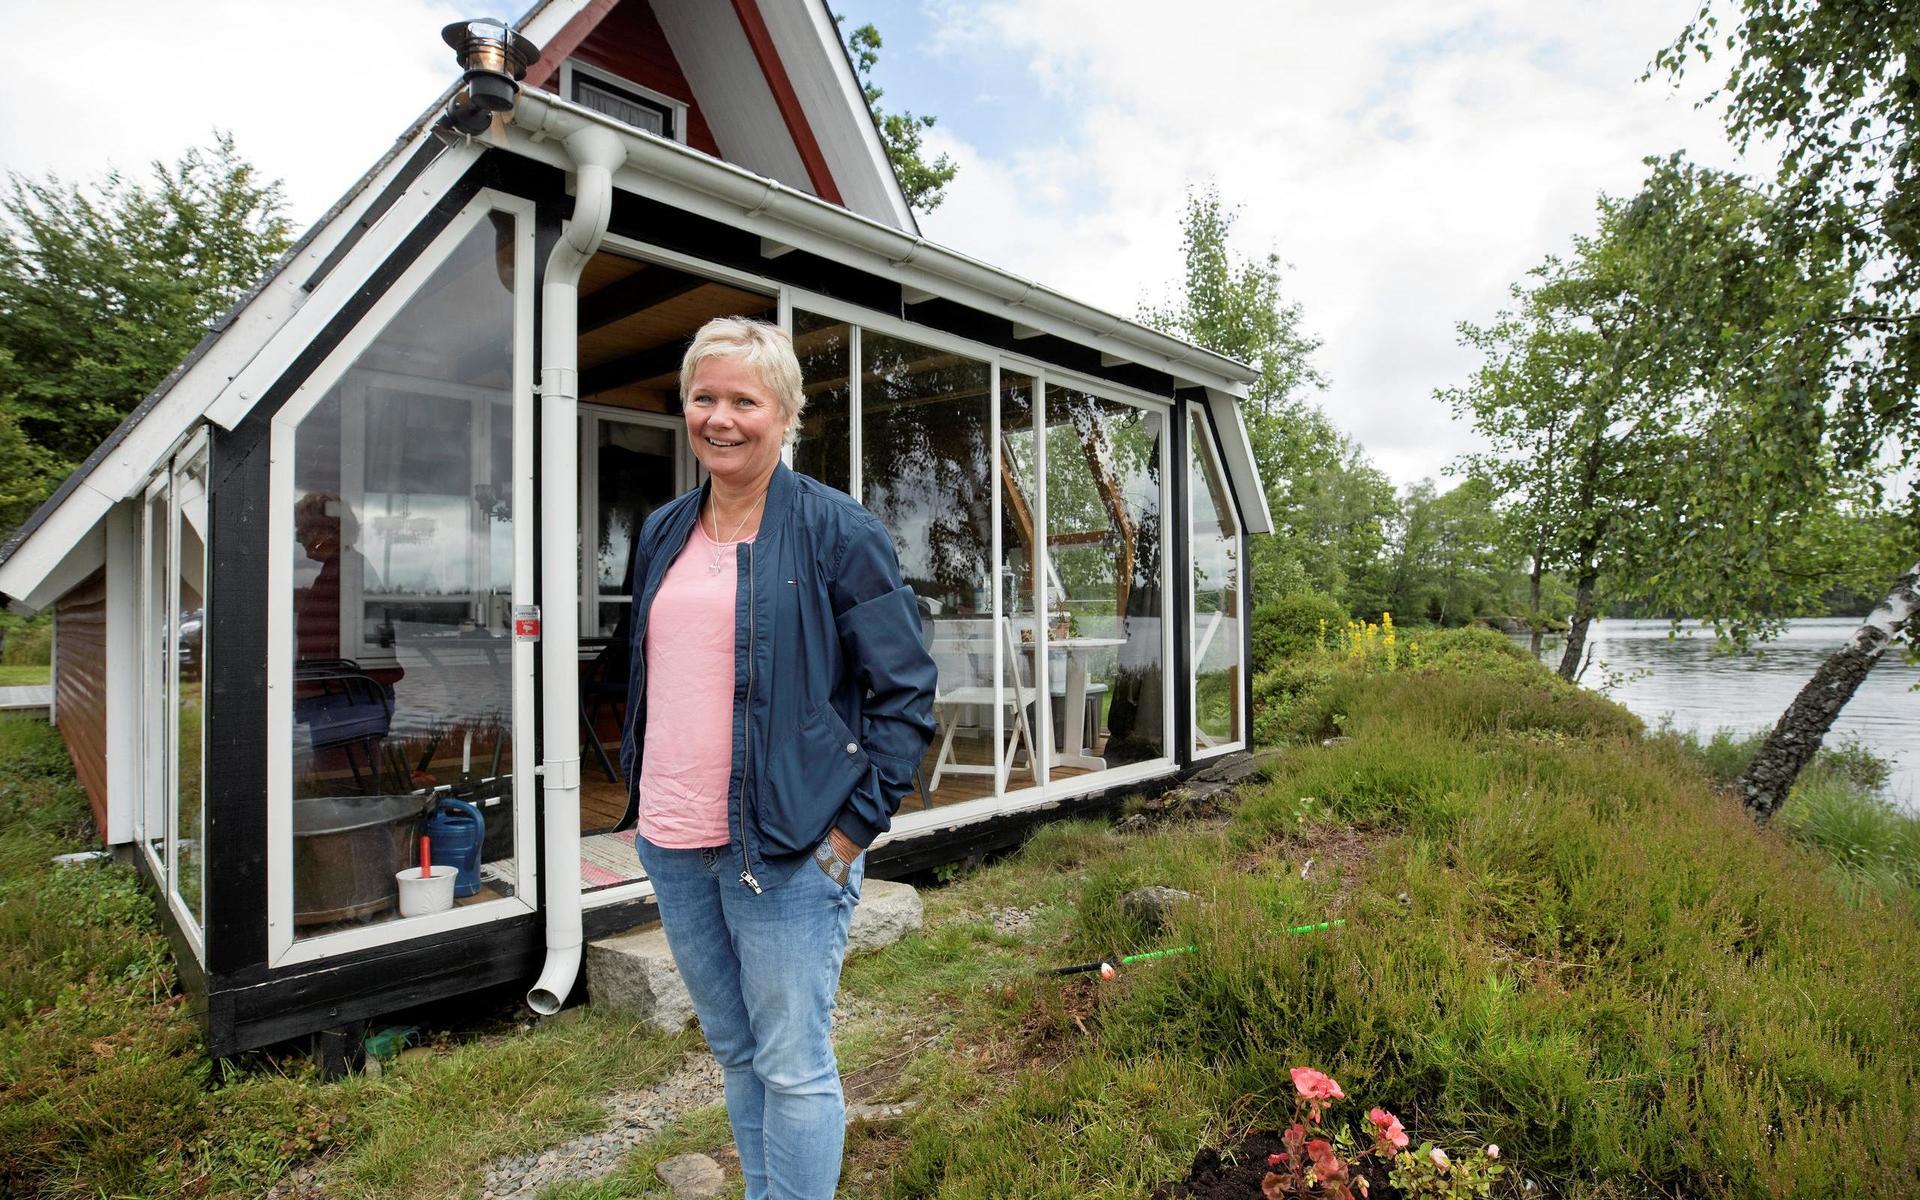 Annelis lilla hus med sovloft, ovanlig form och inglasad varenda ligger bara några meter från Tjärnesjön i Falkenbergs inland.